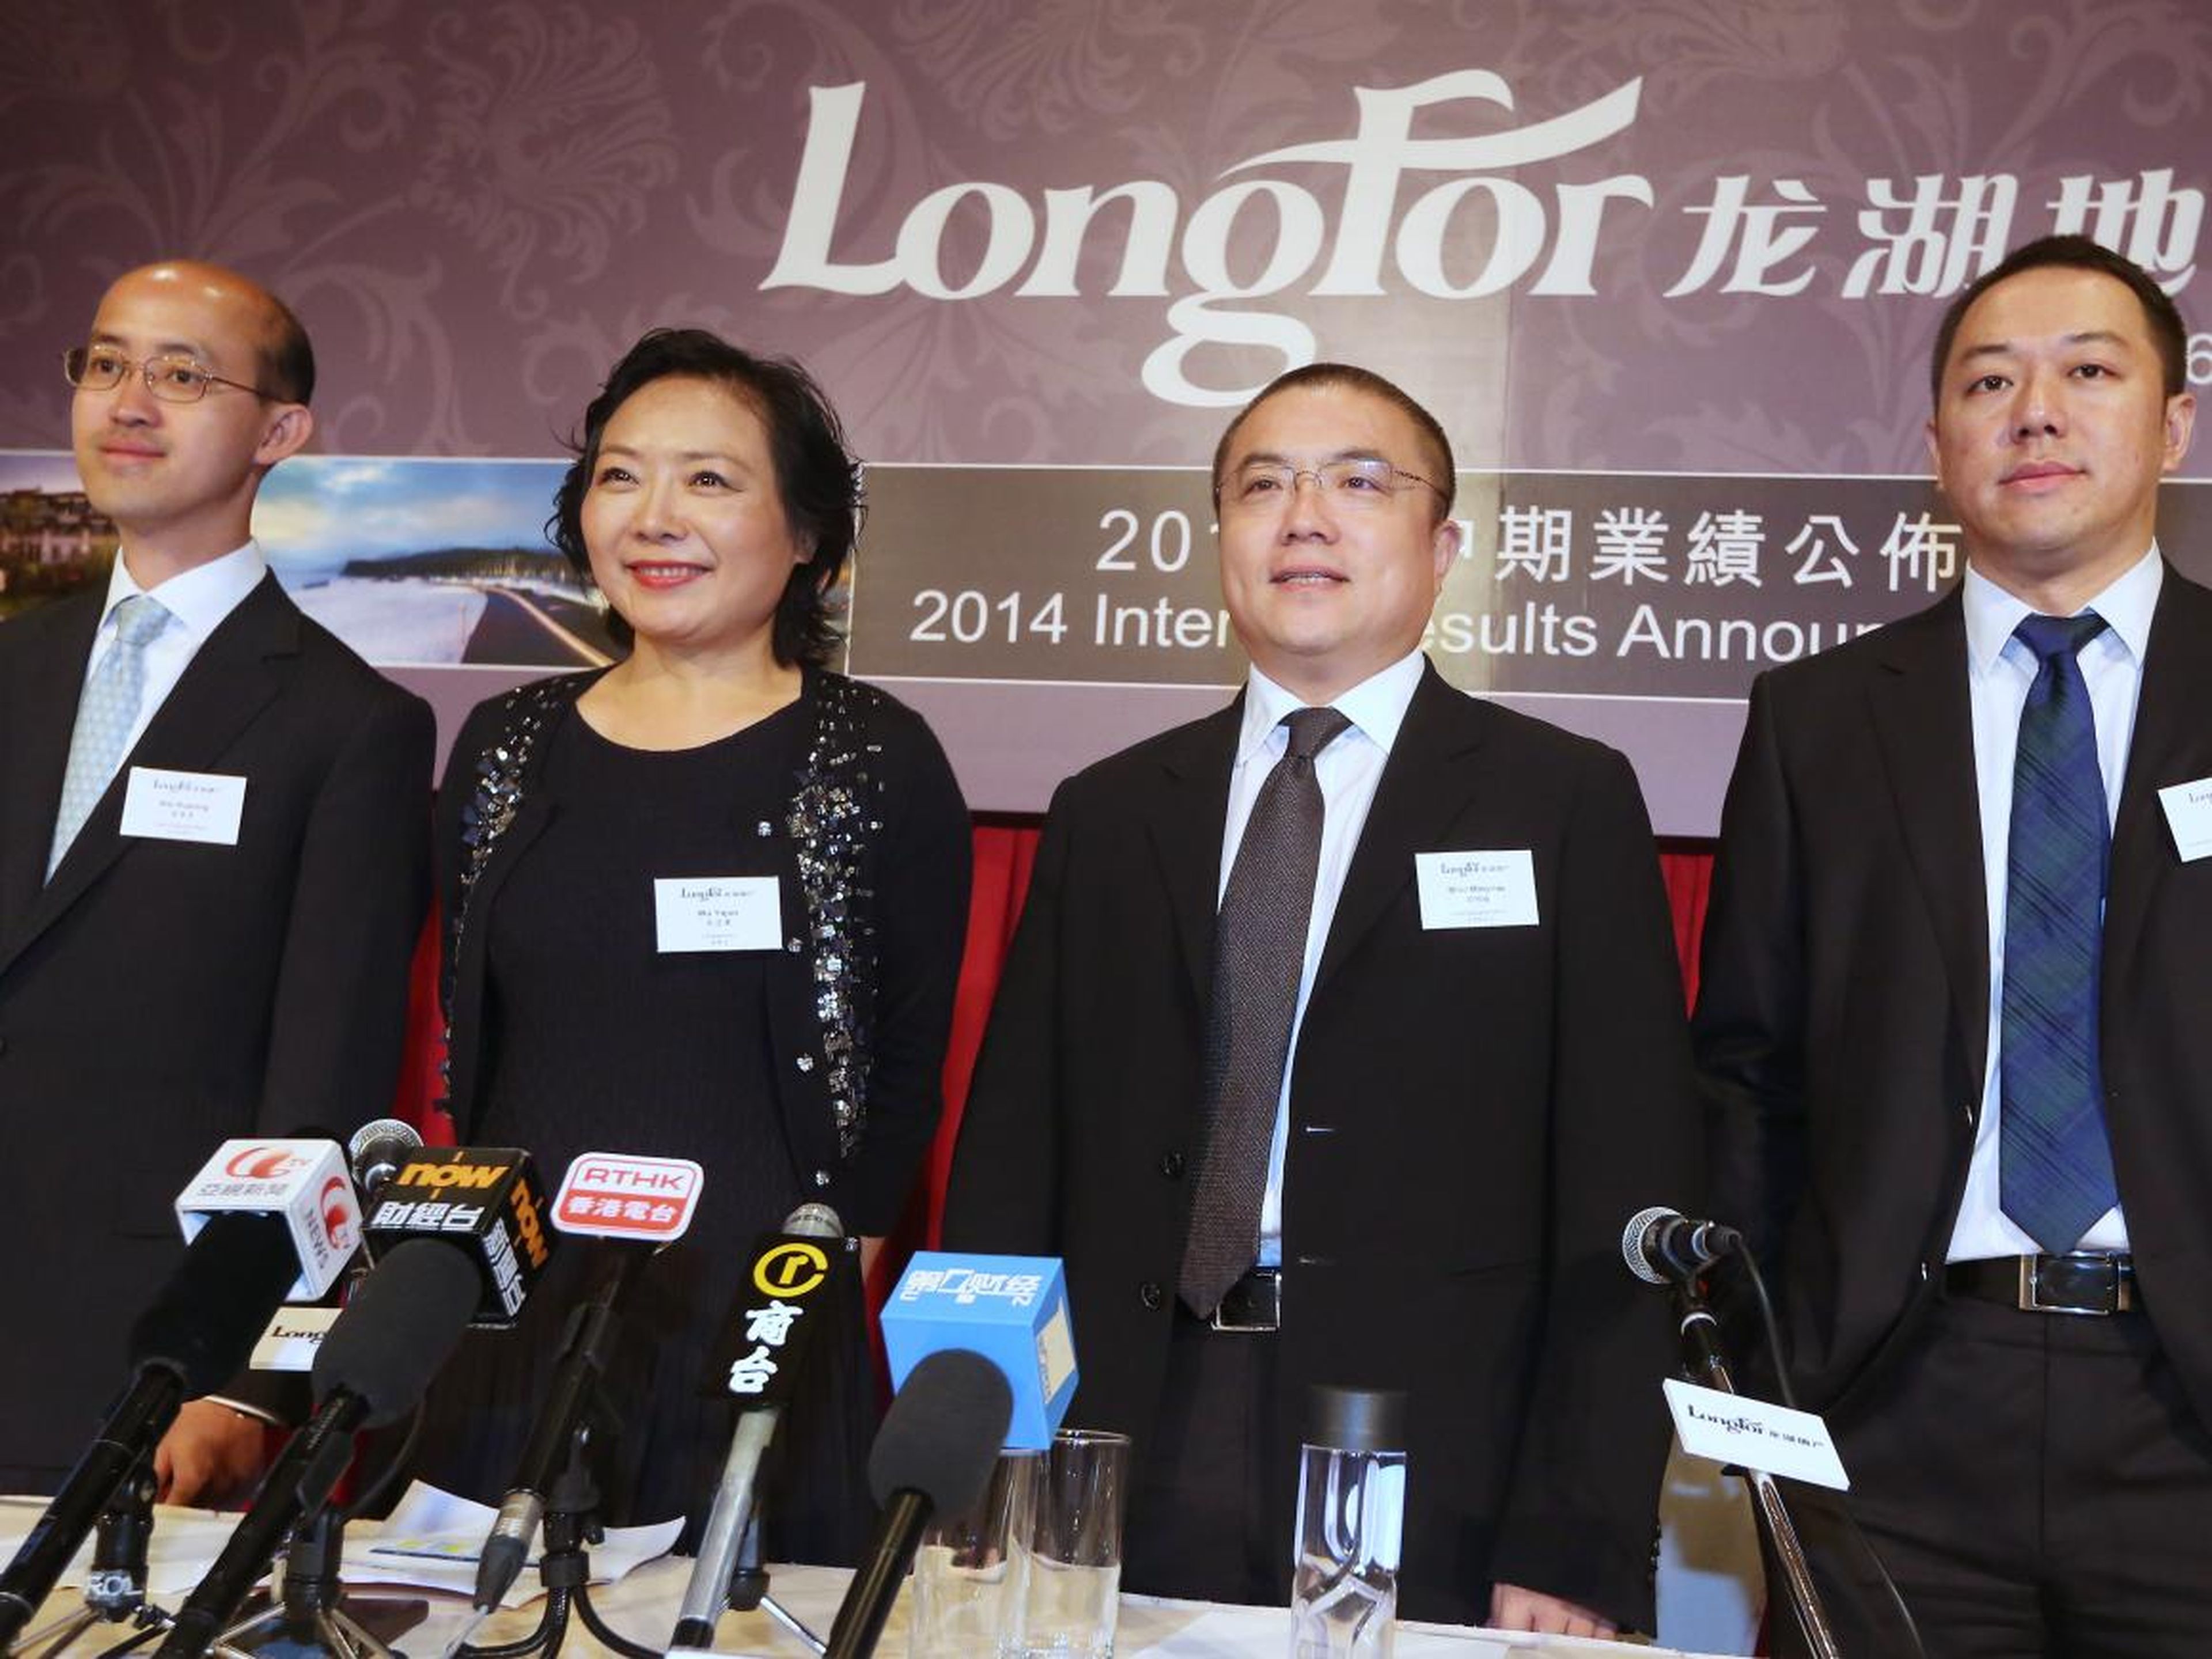 The Longfor executives Wei Huaning, Wu, Shao Mingxiao, and Zhao Yi.